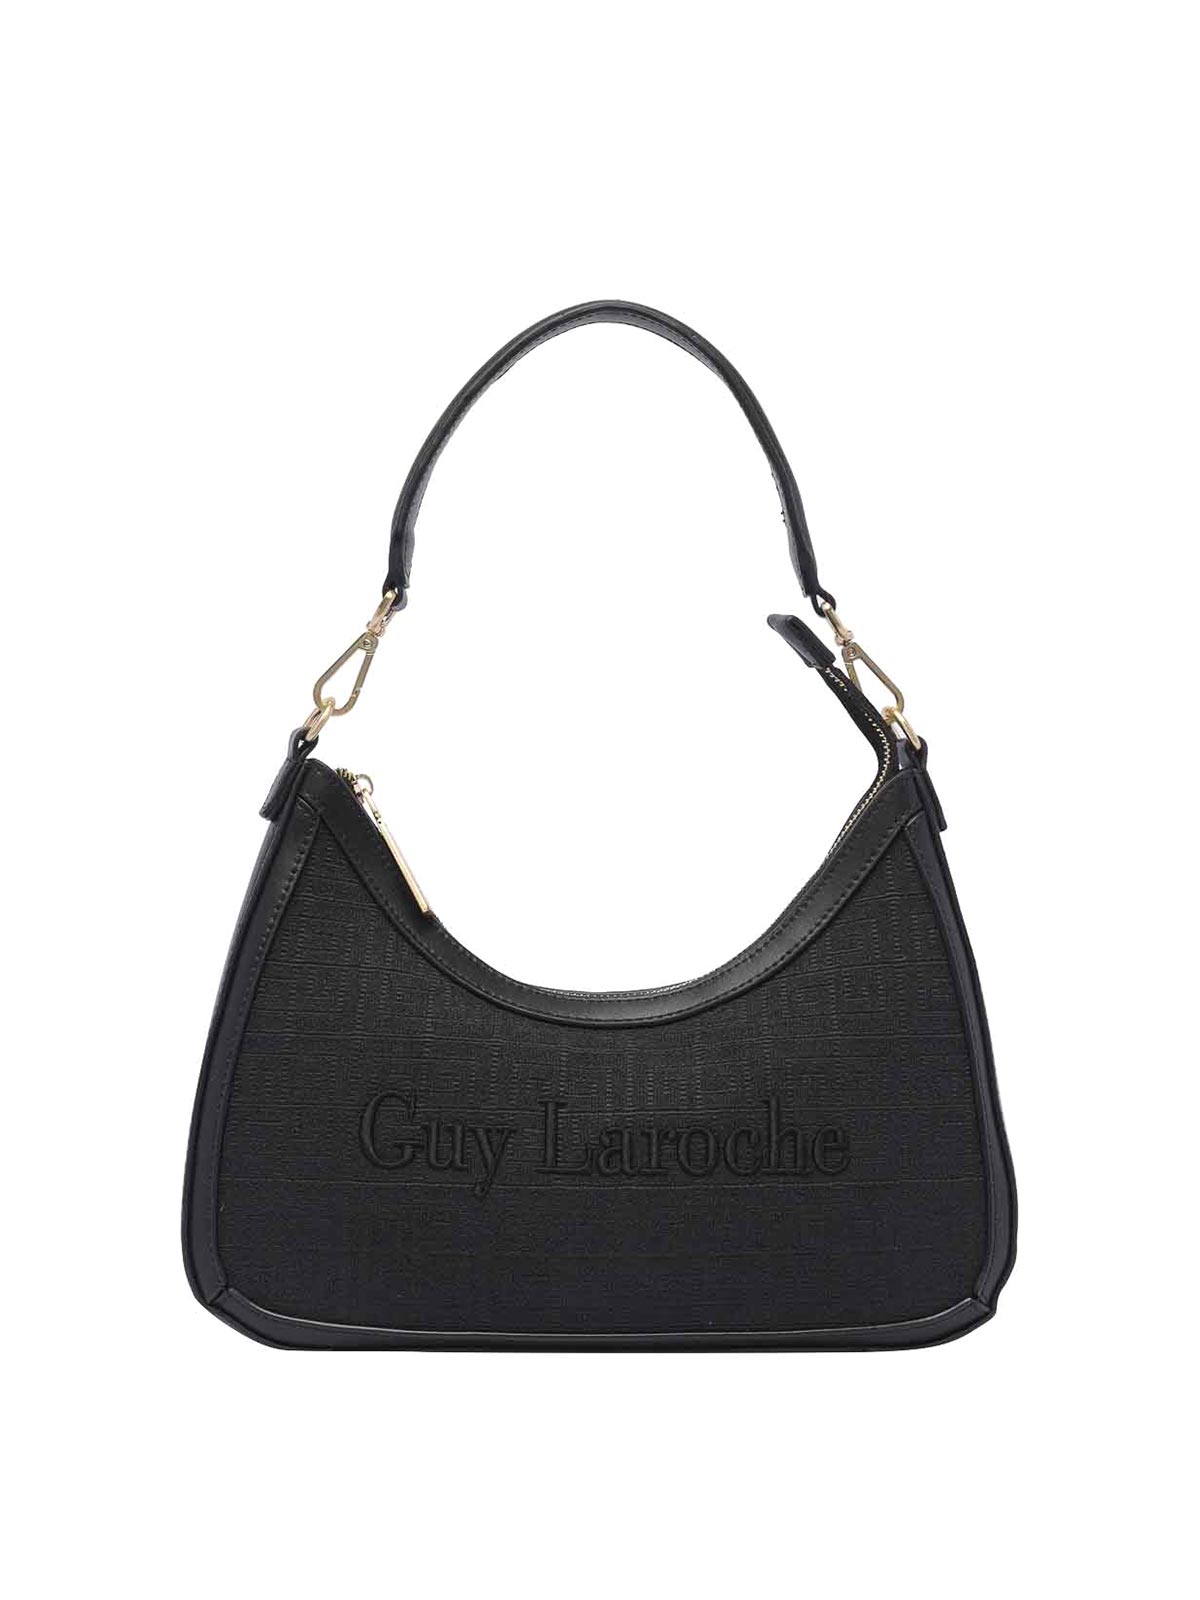 Guy Laroche women's bag with all-over logo Black